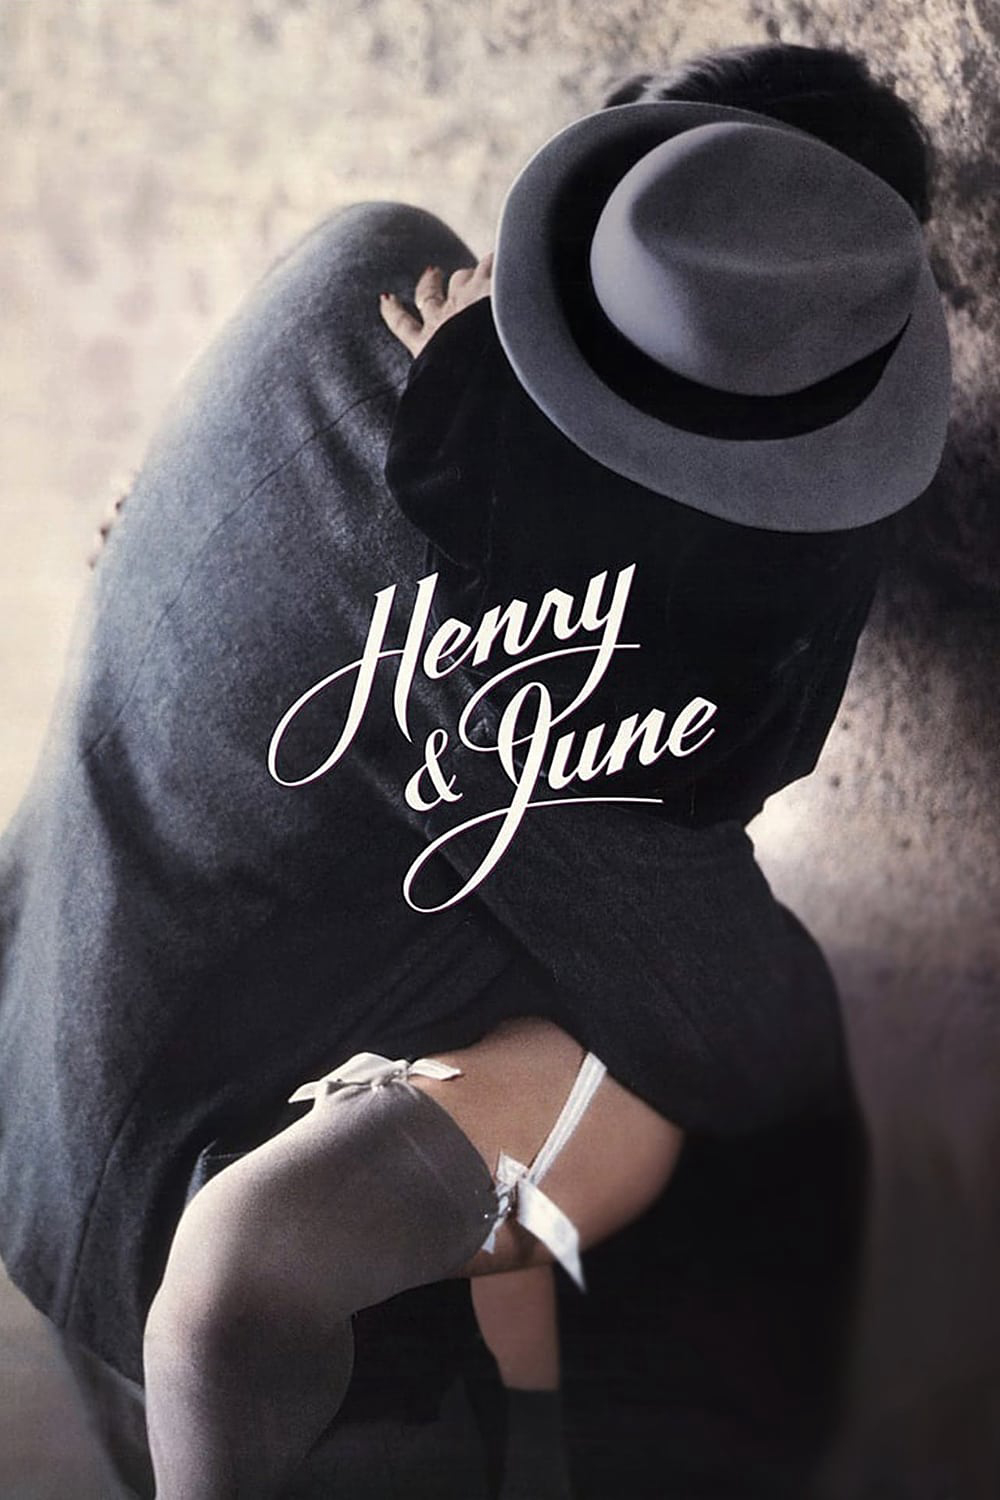 Xem Phim Hnery Gìa Cỗi (Henry & June)